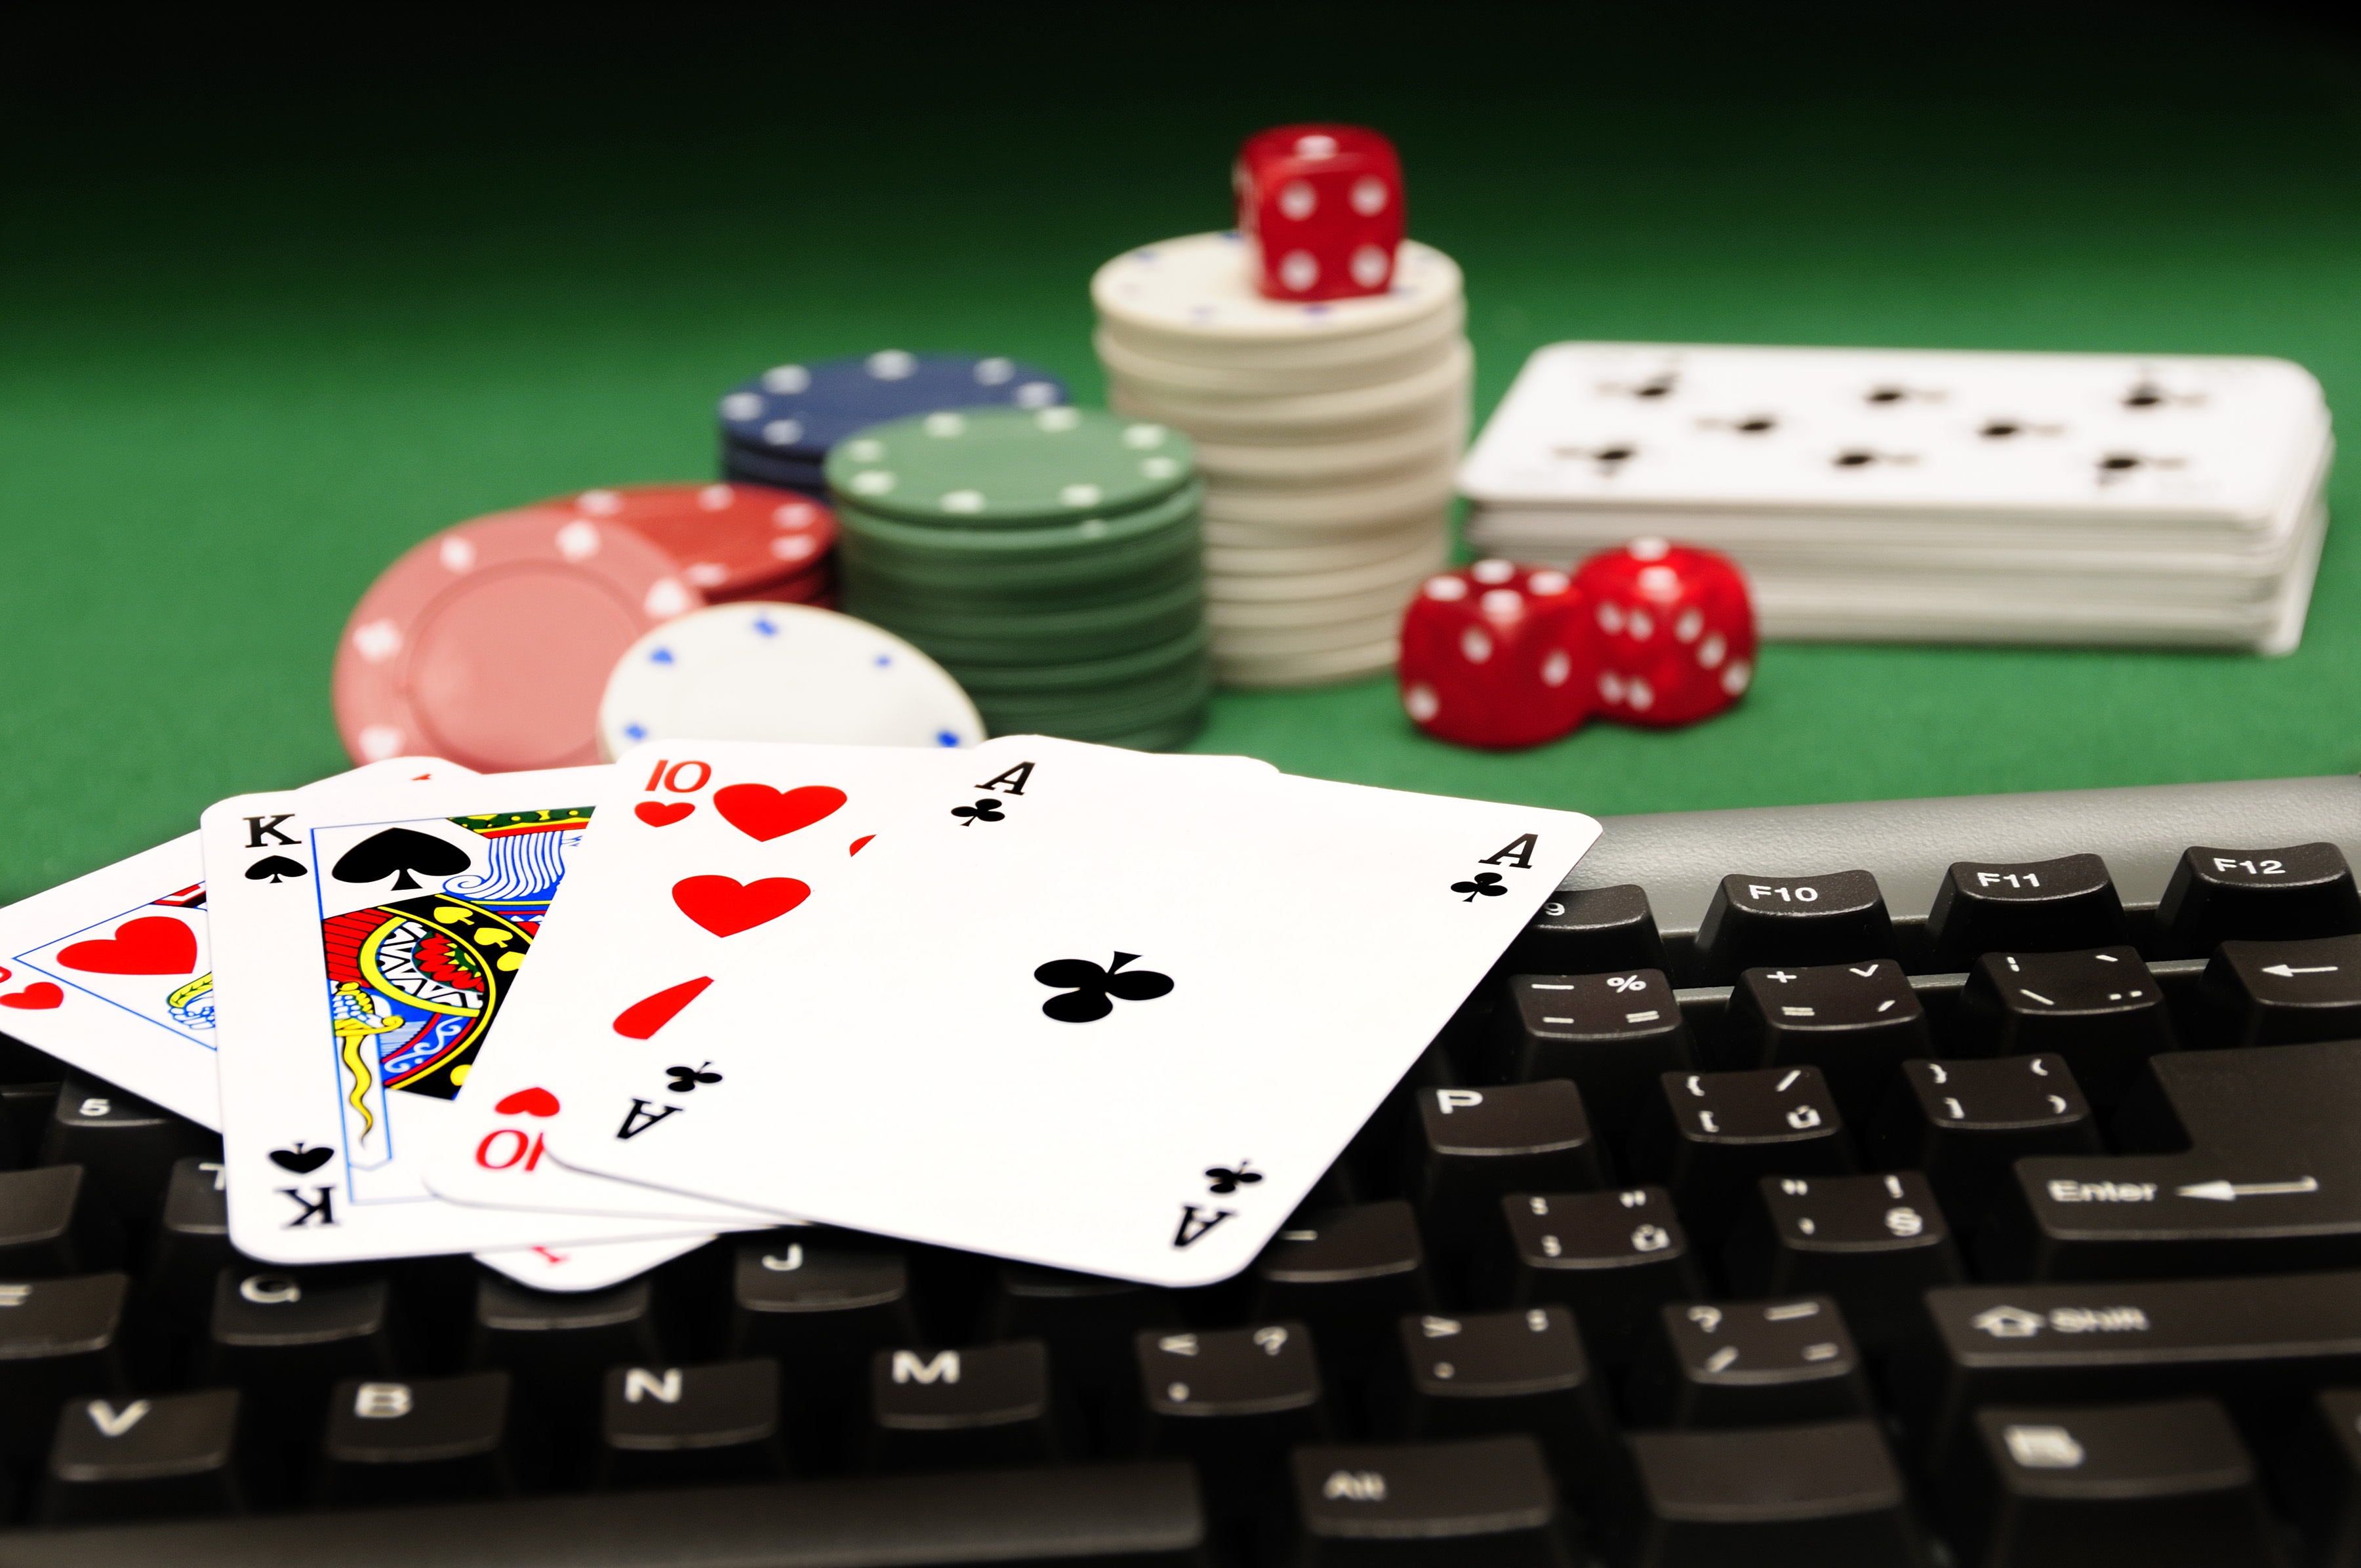 Online casino poker gambling играть в игру кик бутовский гонки на картах